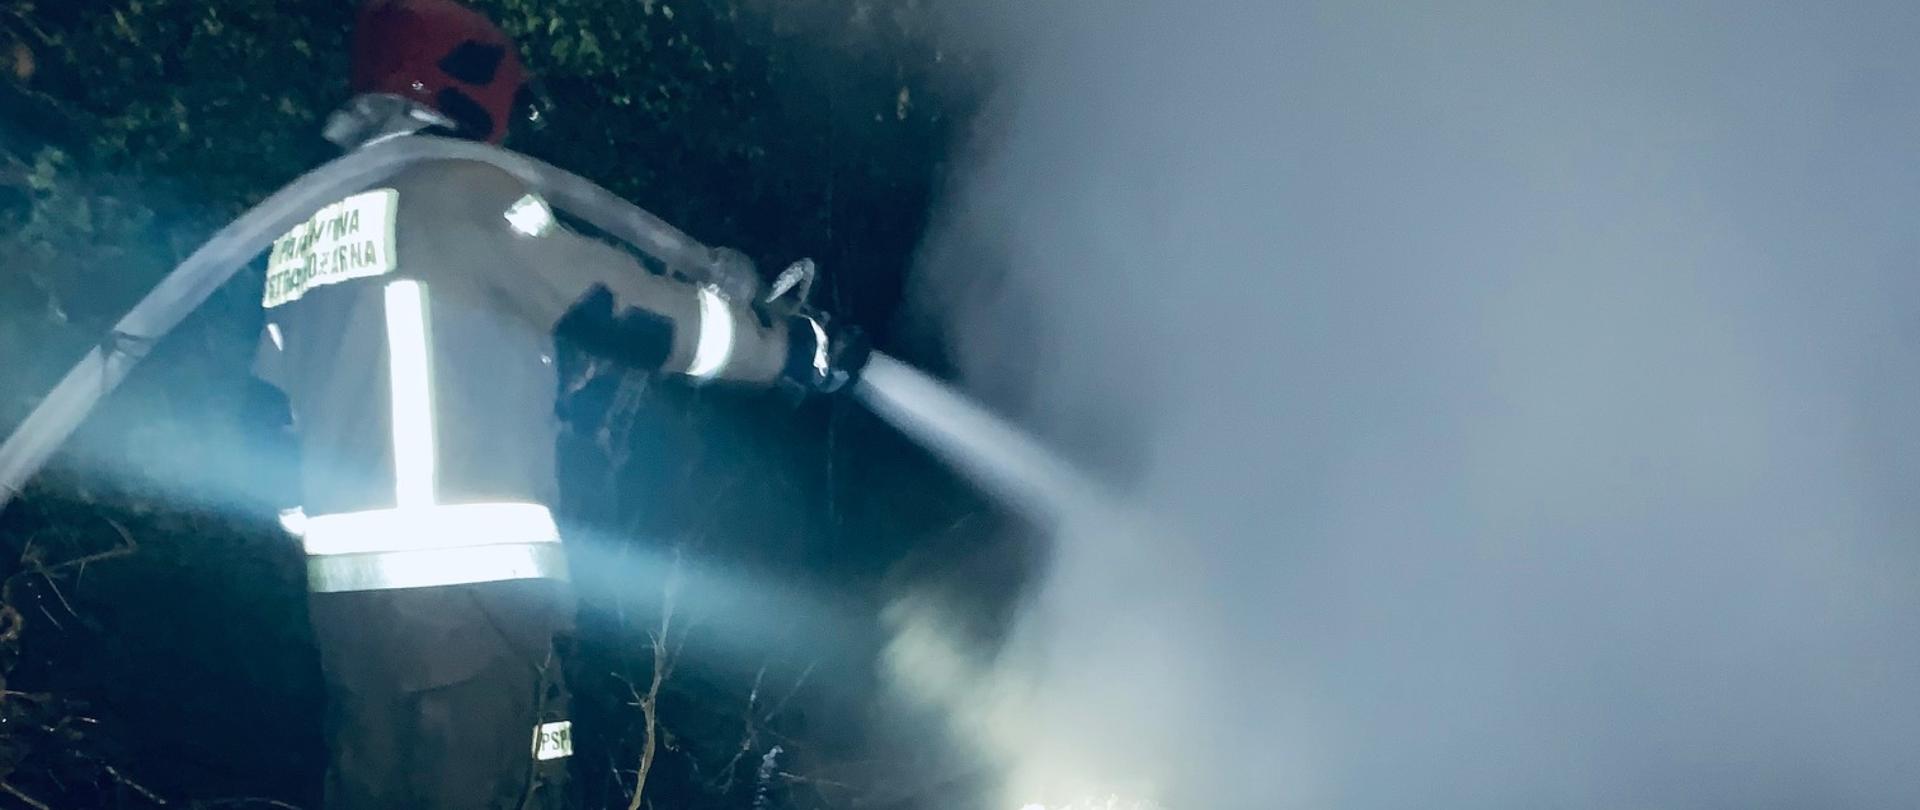  Zdjęcie przedstawia ratownika podającego wodę na palący się budynek. Z pogorzeliska unoszą się kłęby pary wodnej i dymu.